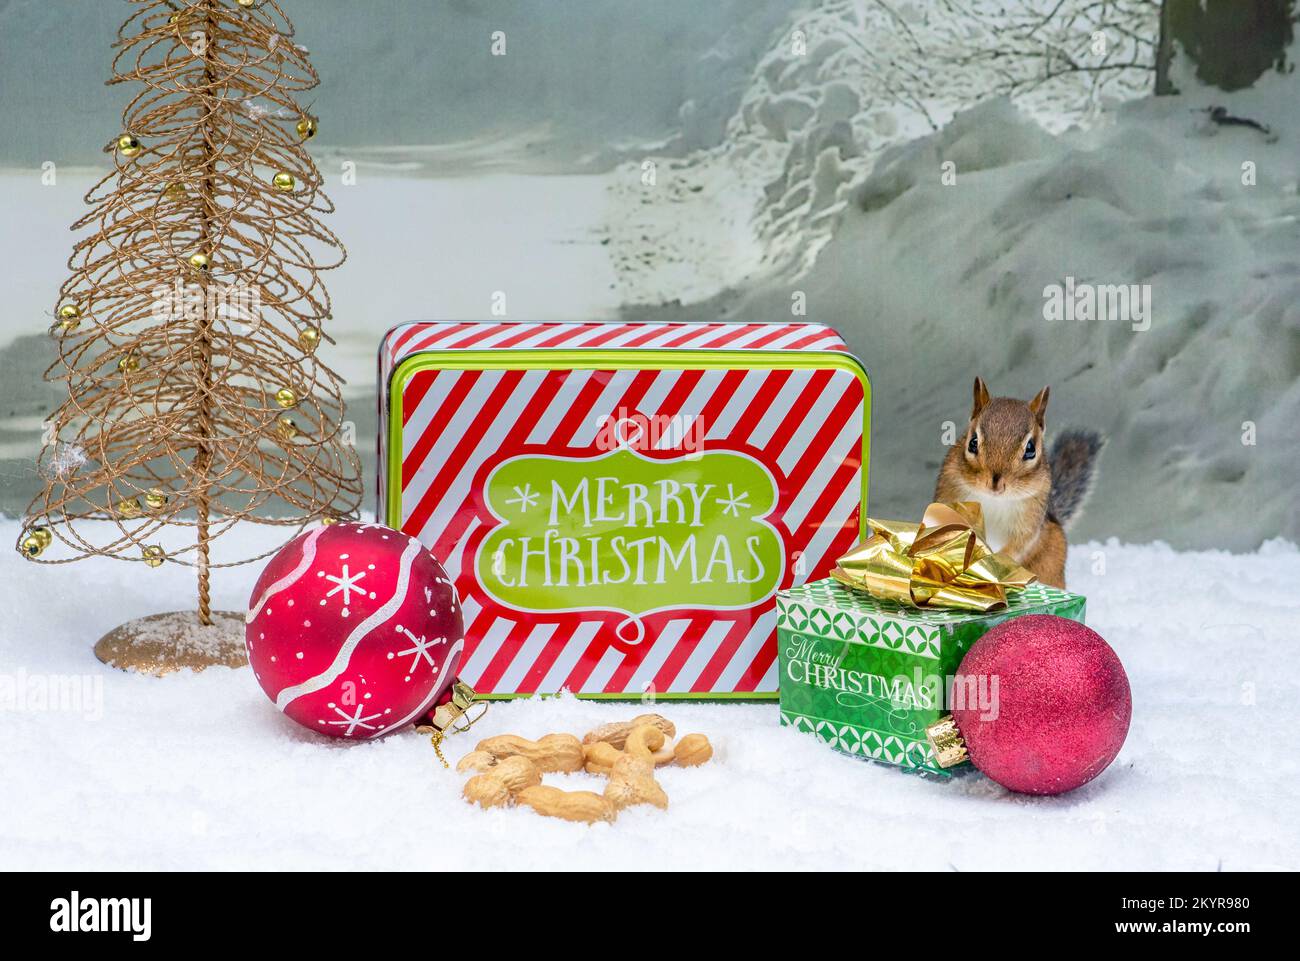 Das Weihnachtsbaumhörnchen fügt einen Haufen Erdnüsse zu den Weihnachtsgeschenken hinzu Stockfoto